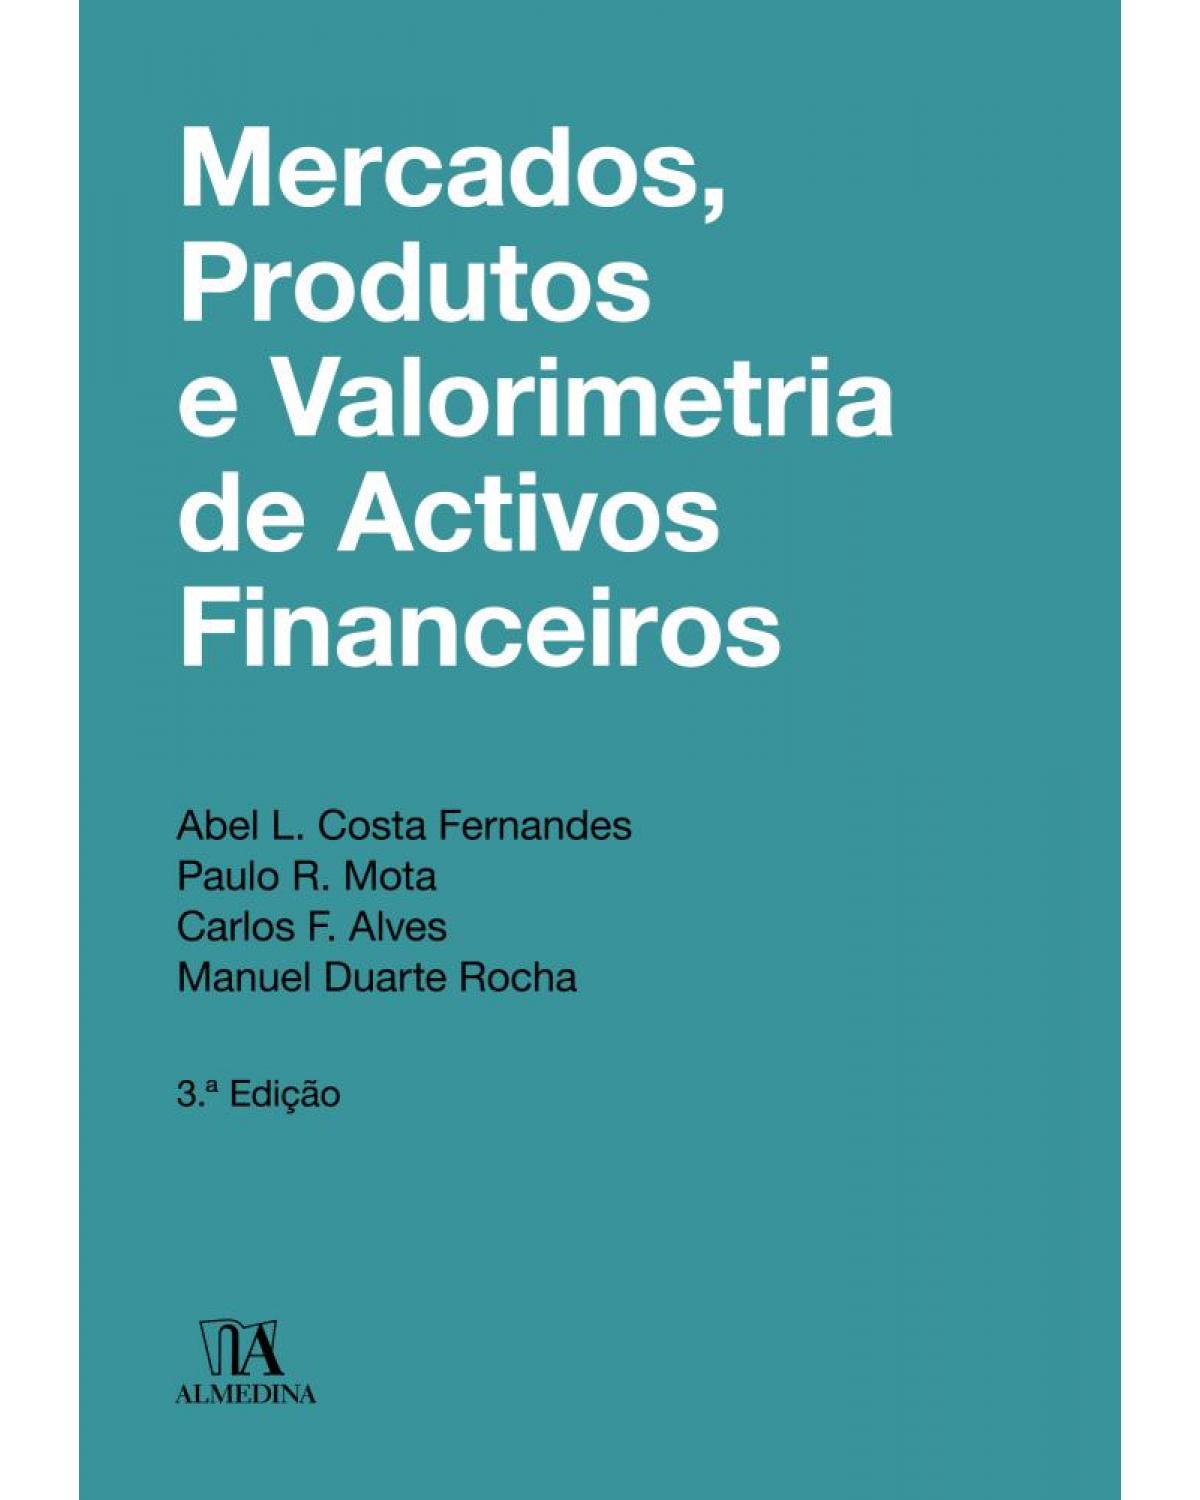 Mercados, produtos e valorimetria de activos financeiros - 3ª Edição | 2018